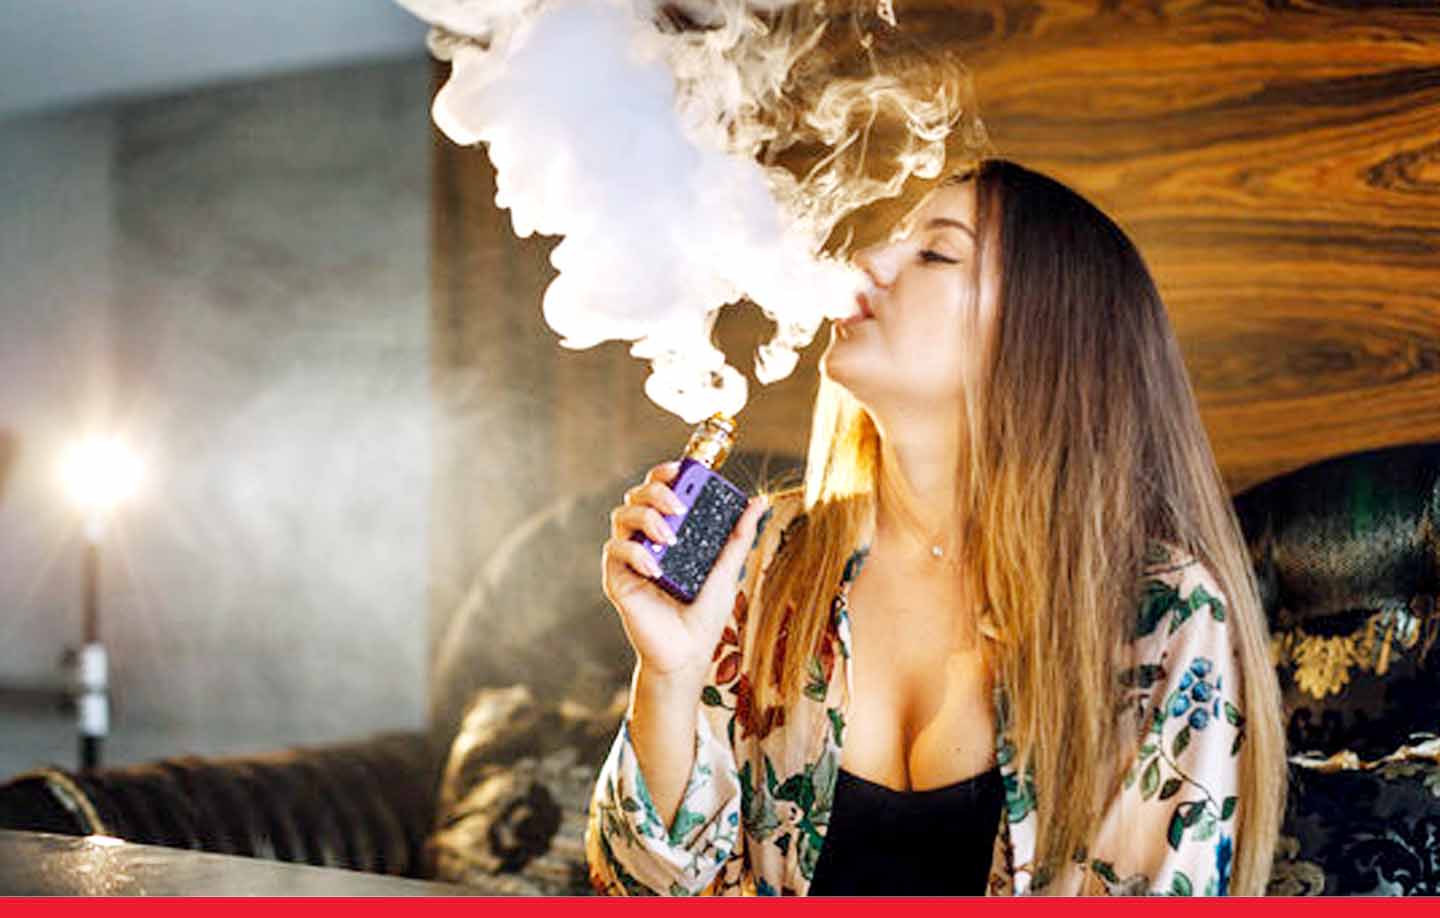 विश्व स्वास्थ्य संगठन ने दी चेतावनी: युवाओं में शराब और ई-सिगरेट का उपयोग खतरनाक